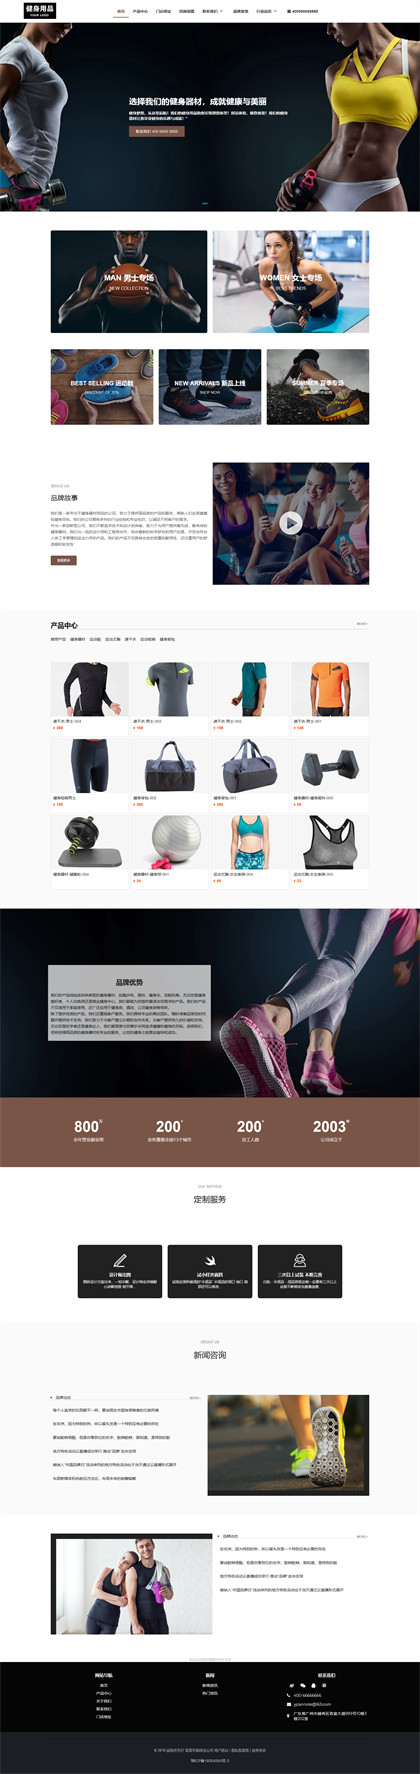 健身器材-健身用品-健身设备-运动用品-运动器材网站模板网站模板预览图片